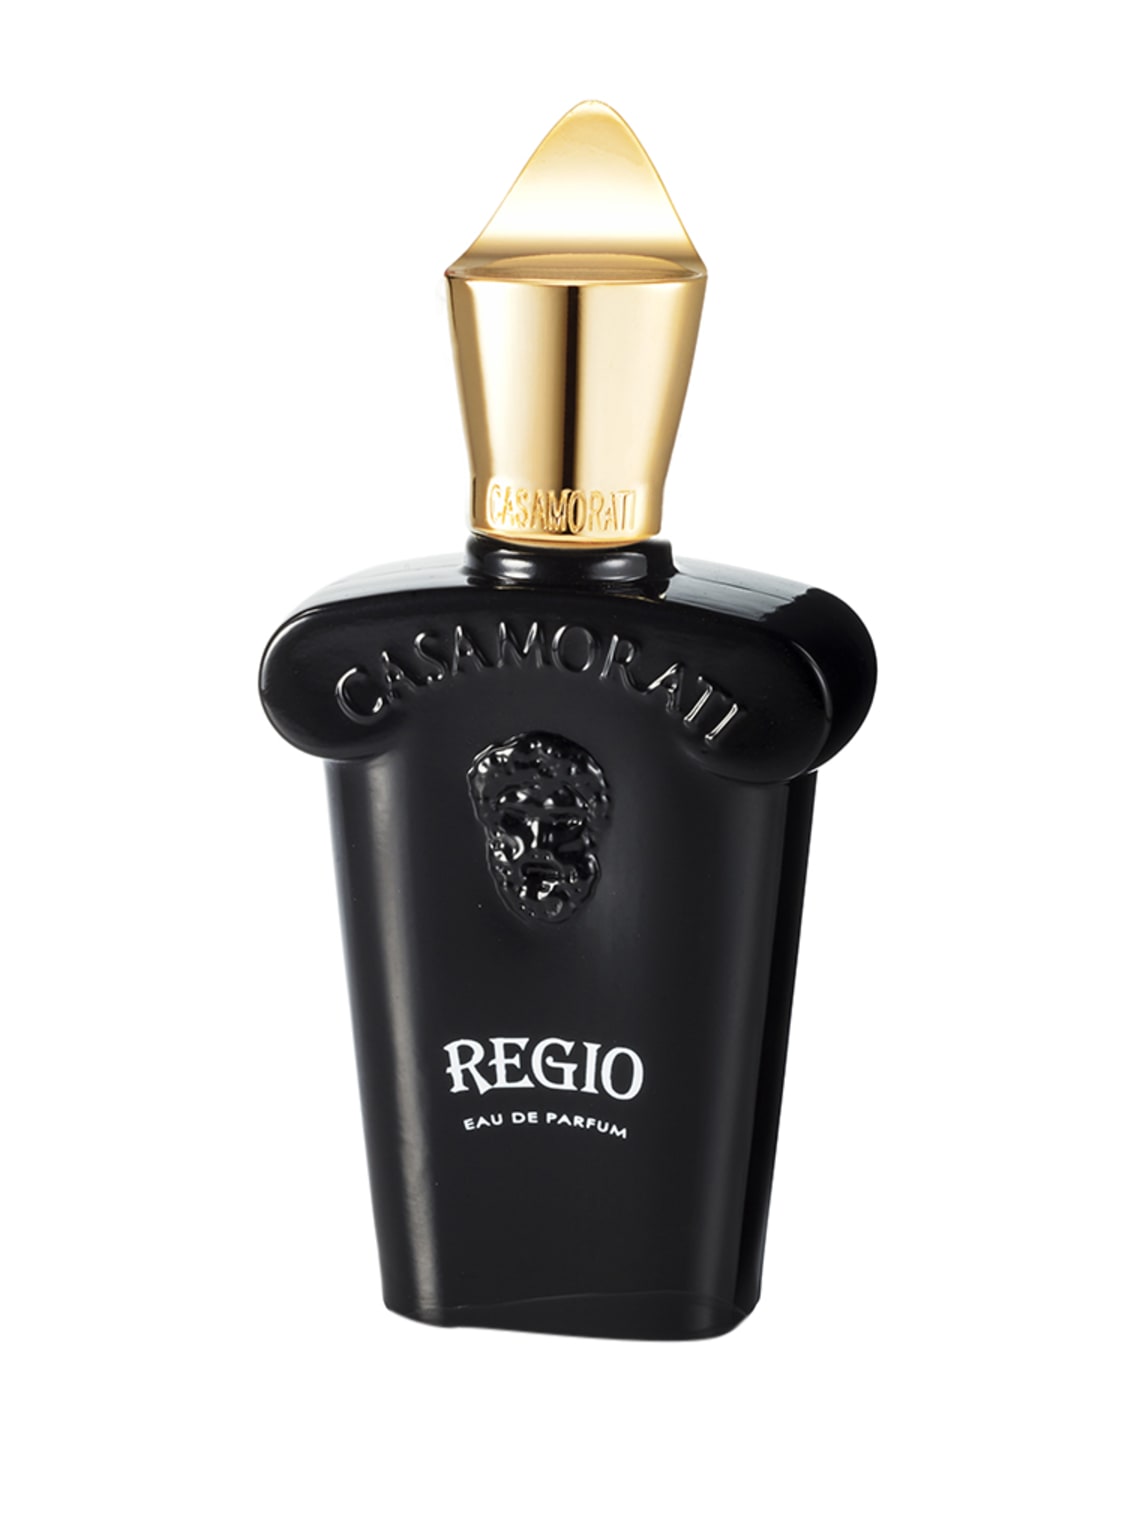 Xerjoff Casamorati Regio Eau de Parfum 100 ml von XERJOFF